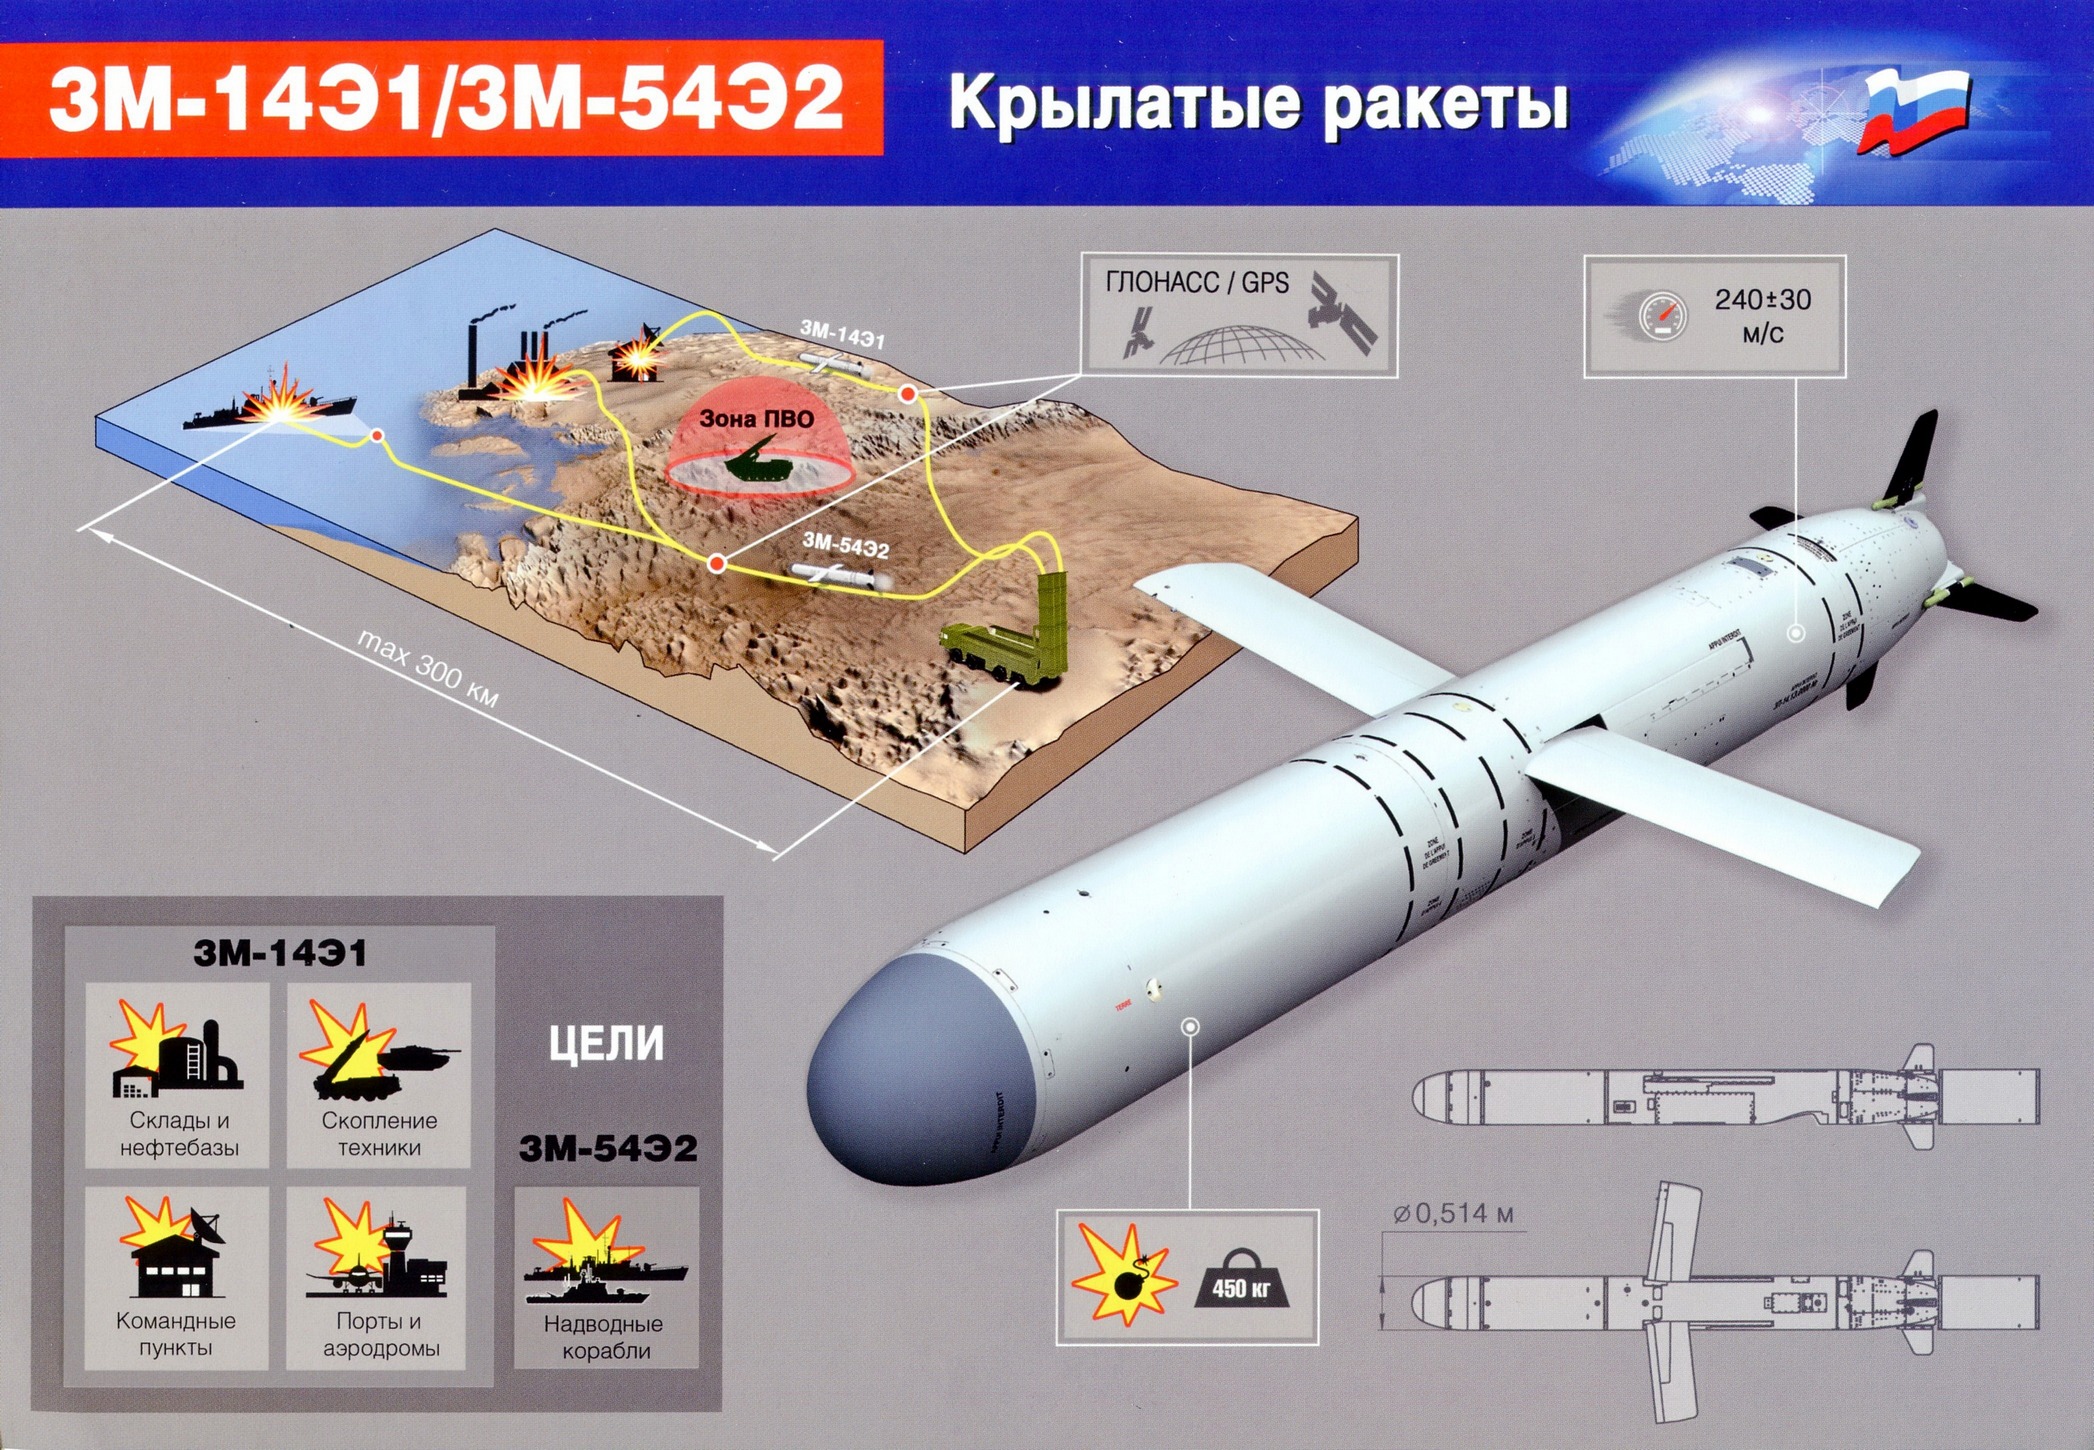 Калибр-нк - крылатая ракета, технические характеристики (ттх) пкр 3м54, скорость и дальность полета, радиус поражения комплекса